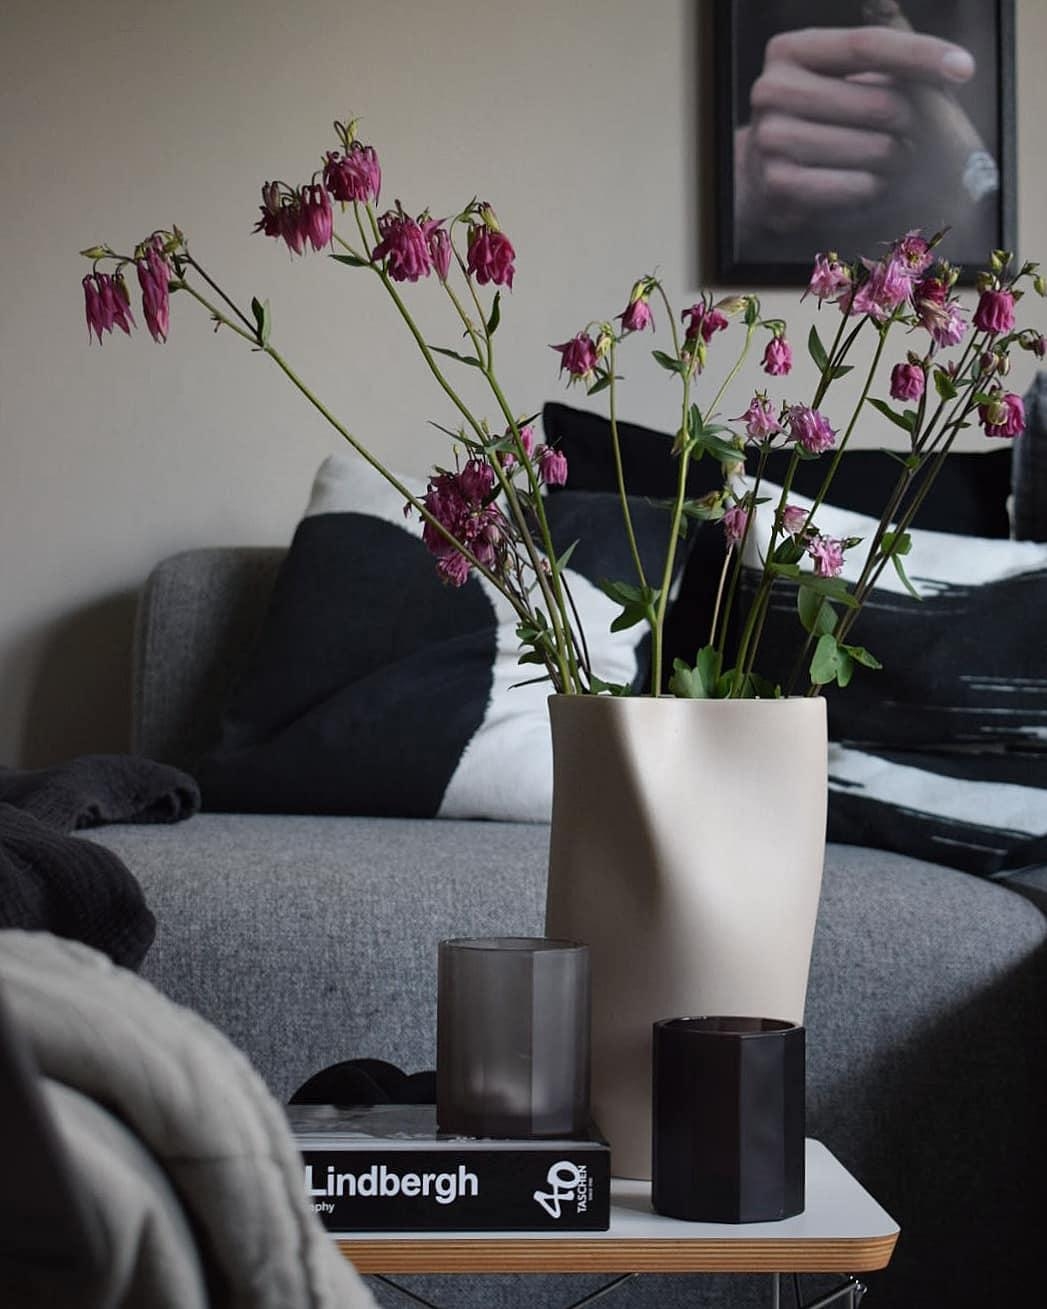 #flowers #colorful für meine Verhältnisse 😉 #livingroom #wohnzimmer #vase